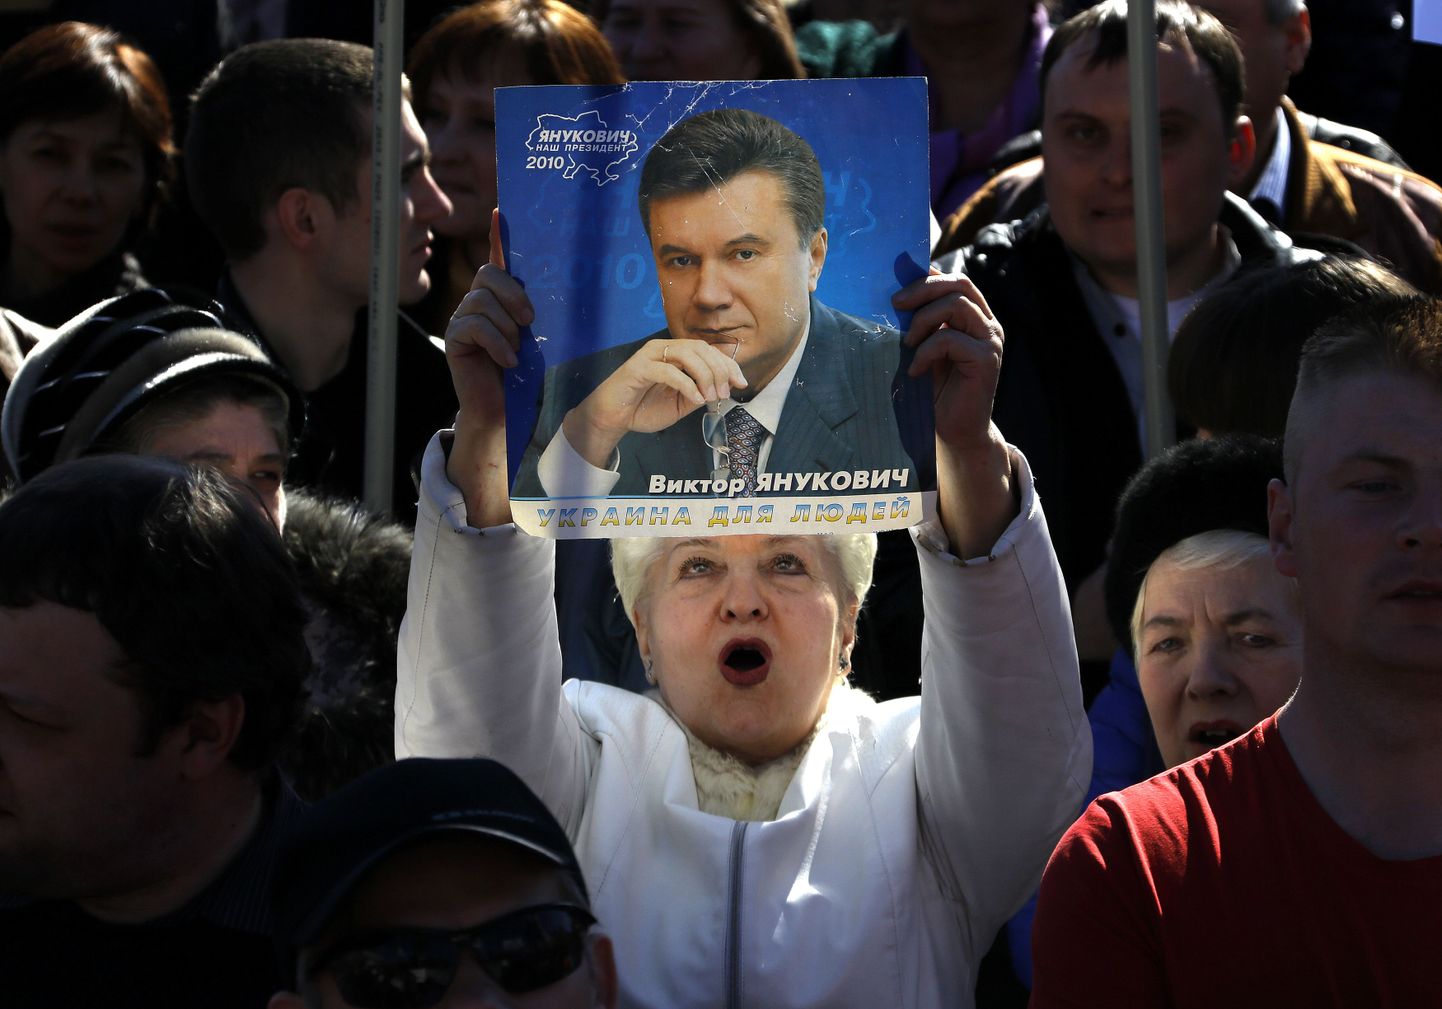 Donetskis toimus 23. märtsil venemeeelsete aktsioon, kus muu hulgas oli näha ka Viktor Janukovõtši näopildiga plakateid.